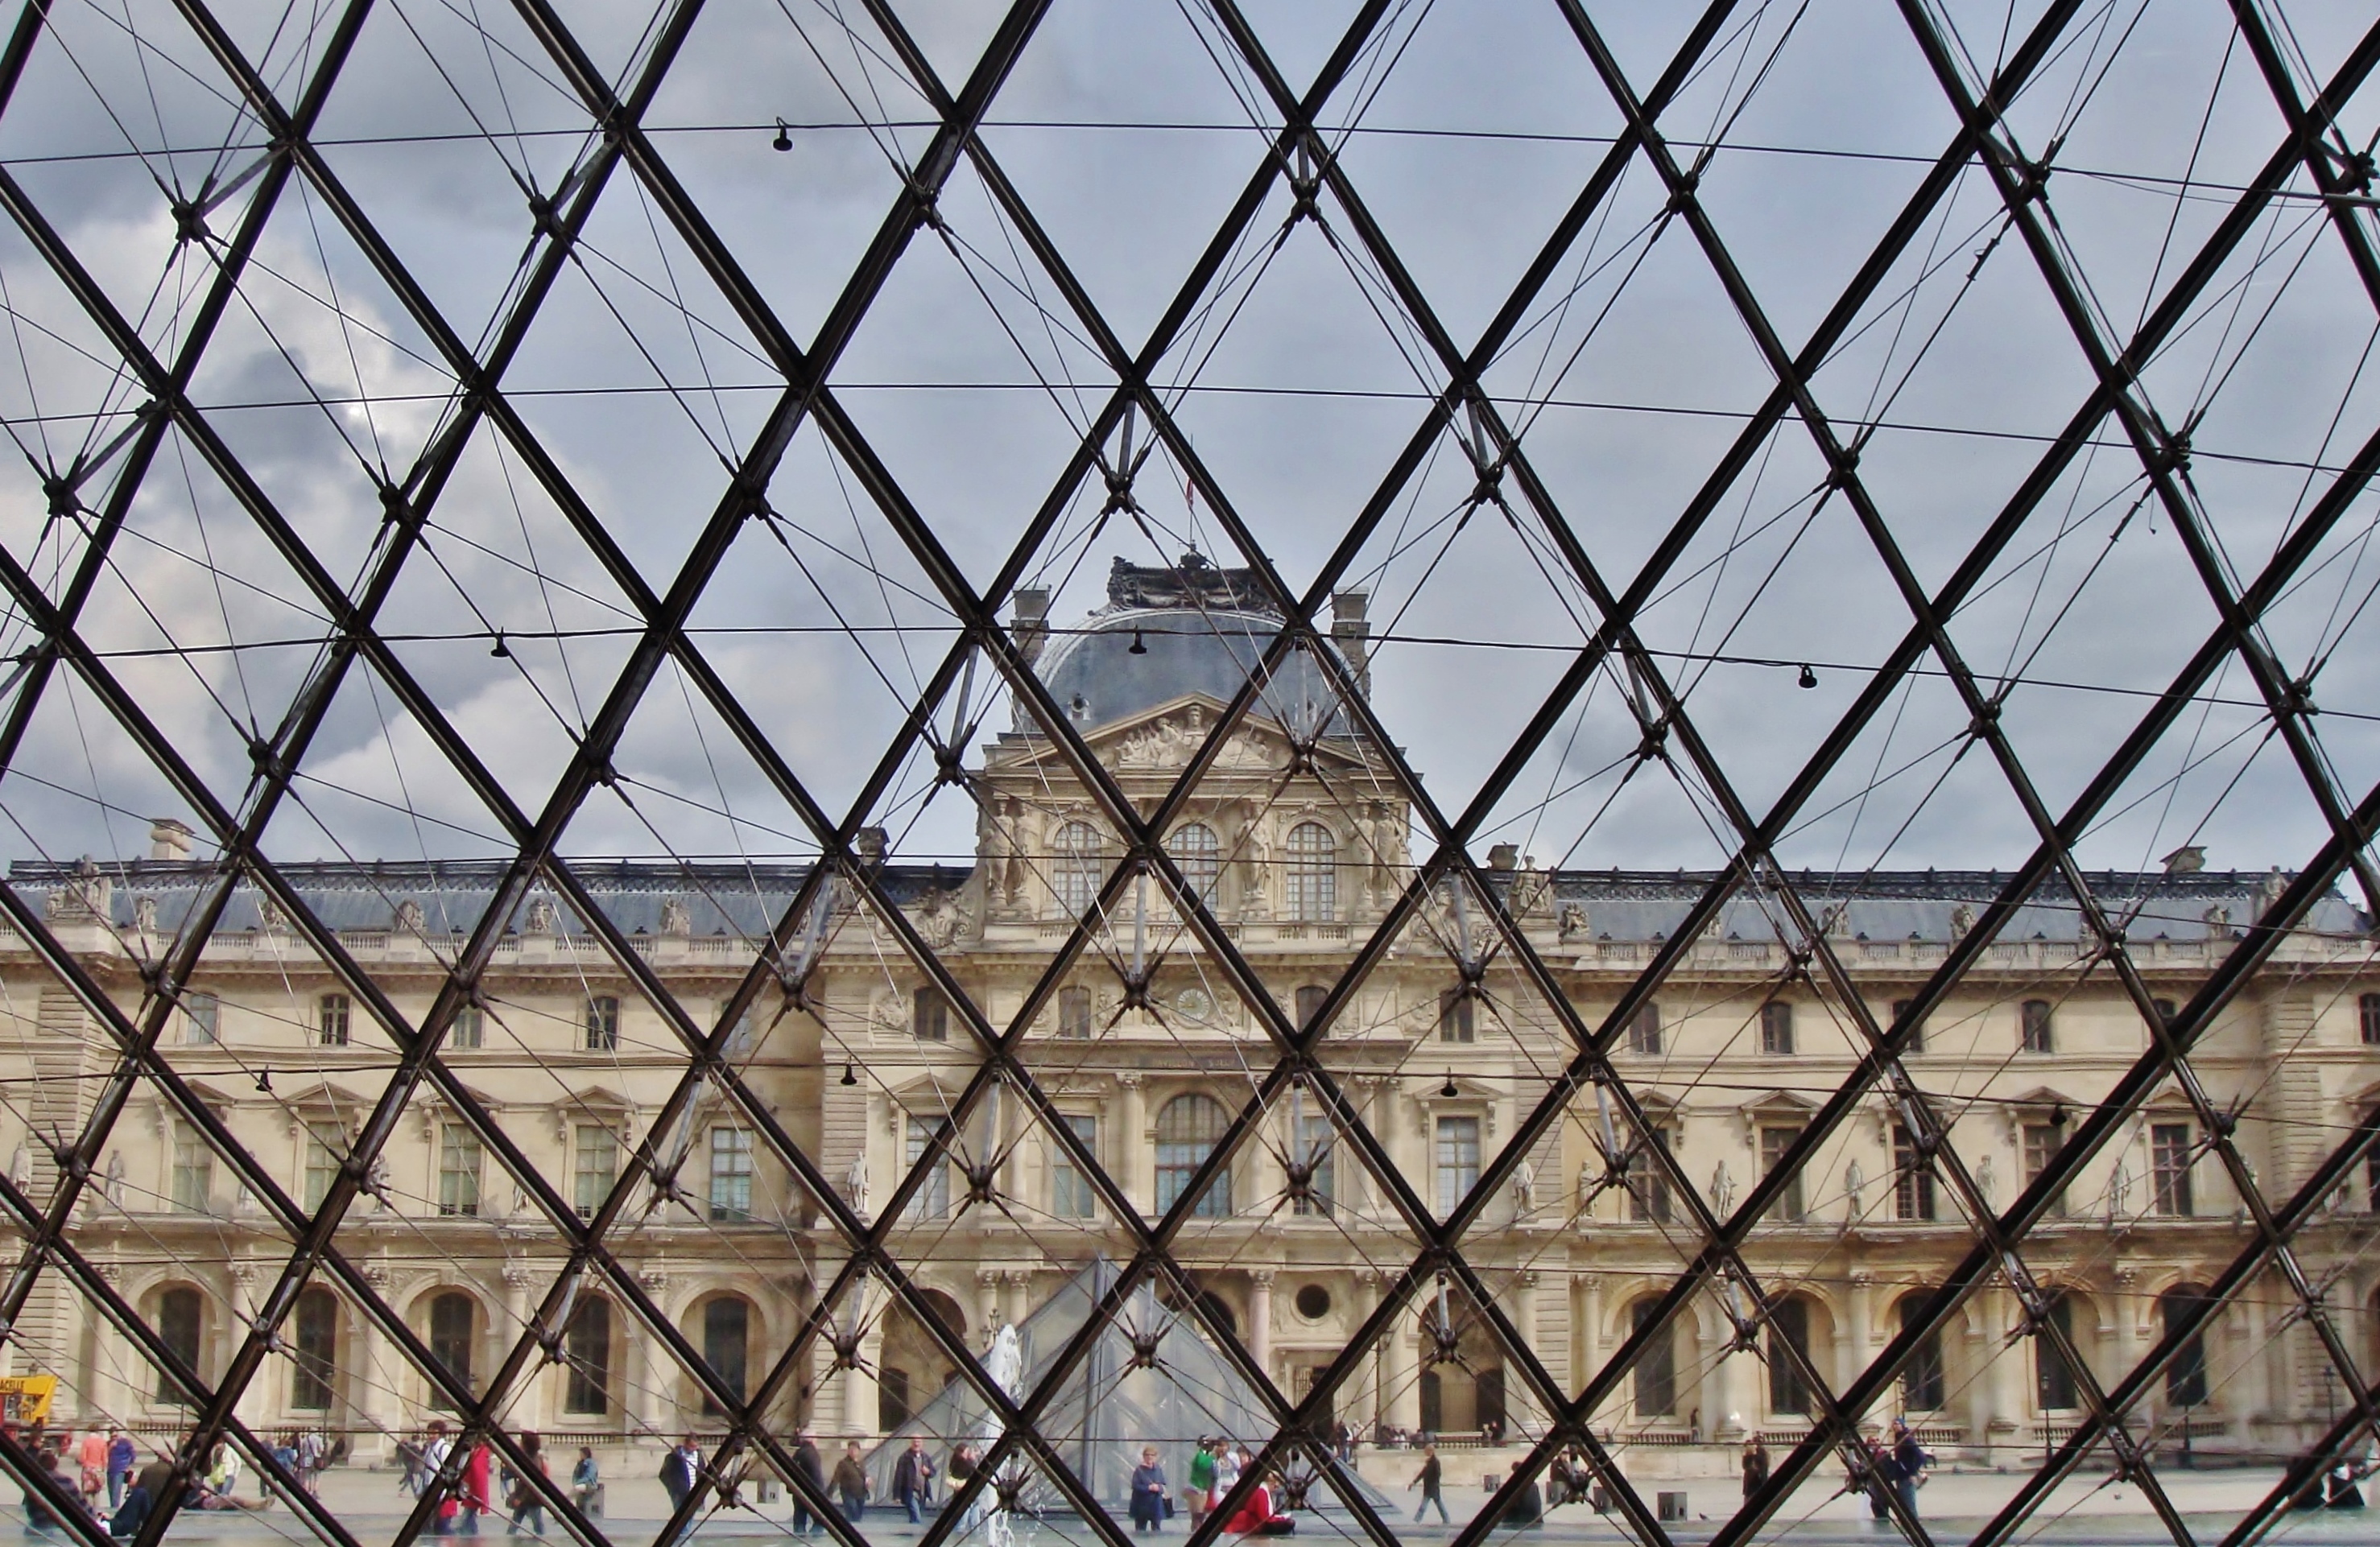 Intrieur de la pyramide: le point de vue du Muse du Louvre  Paris depuis le hall souterrain de la Pyramide.